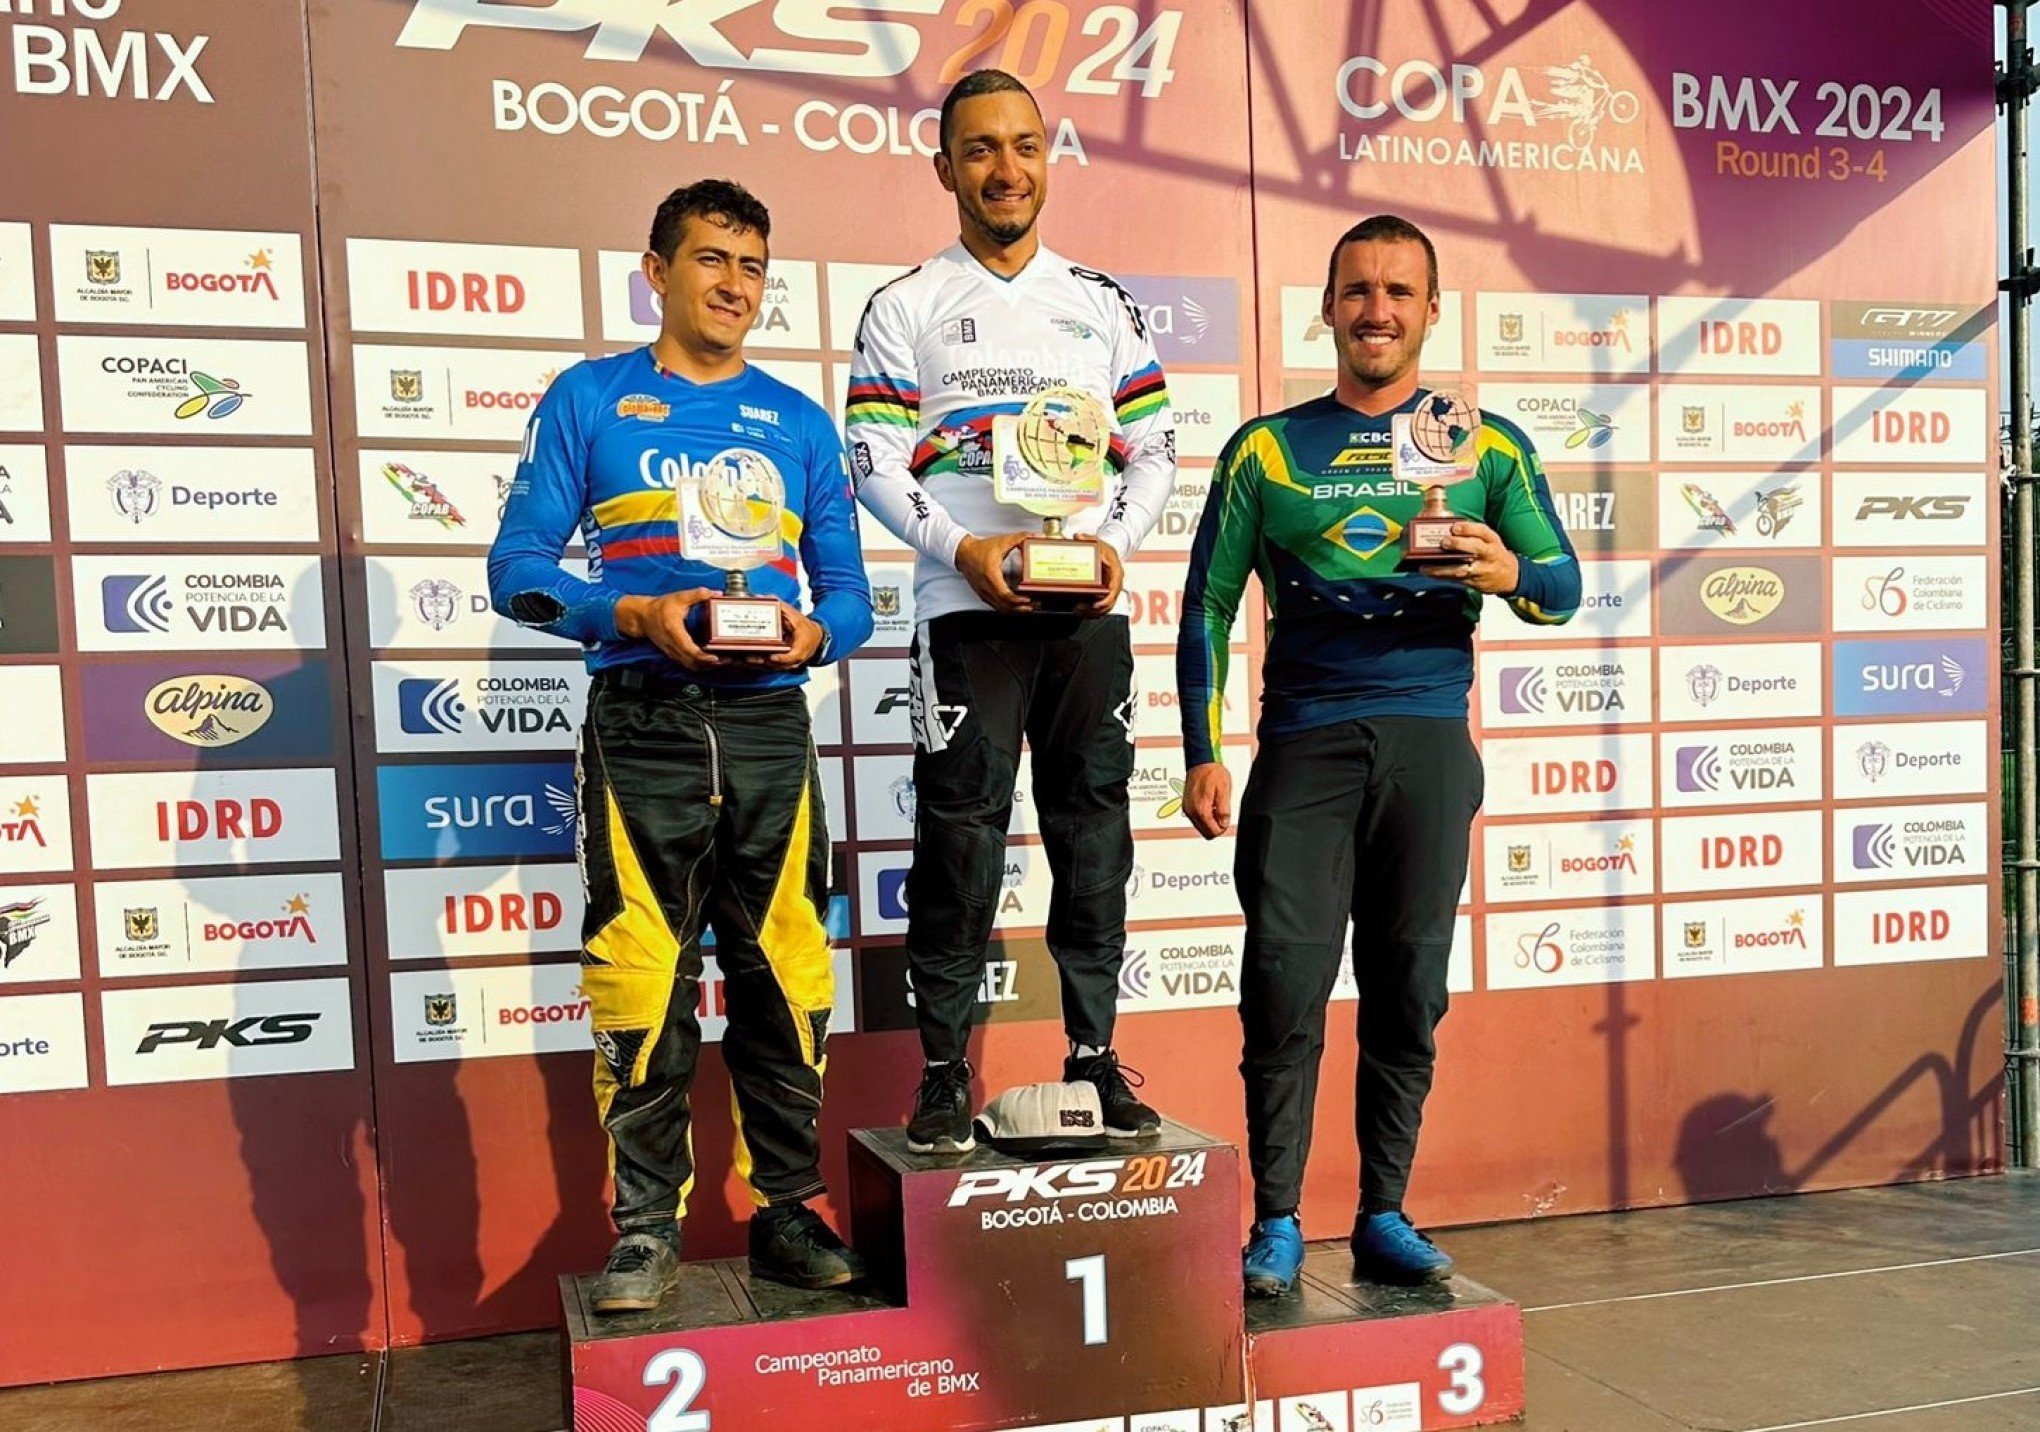 Pilotos de BMX da região voltam da Colômbia com medalhas